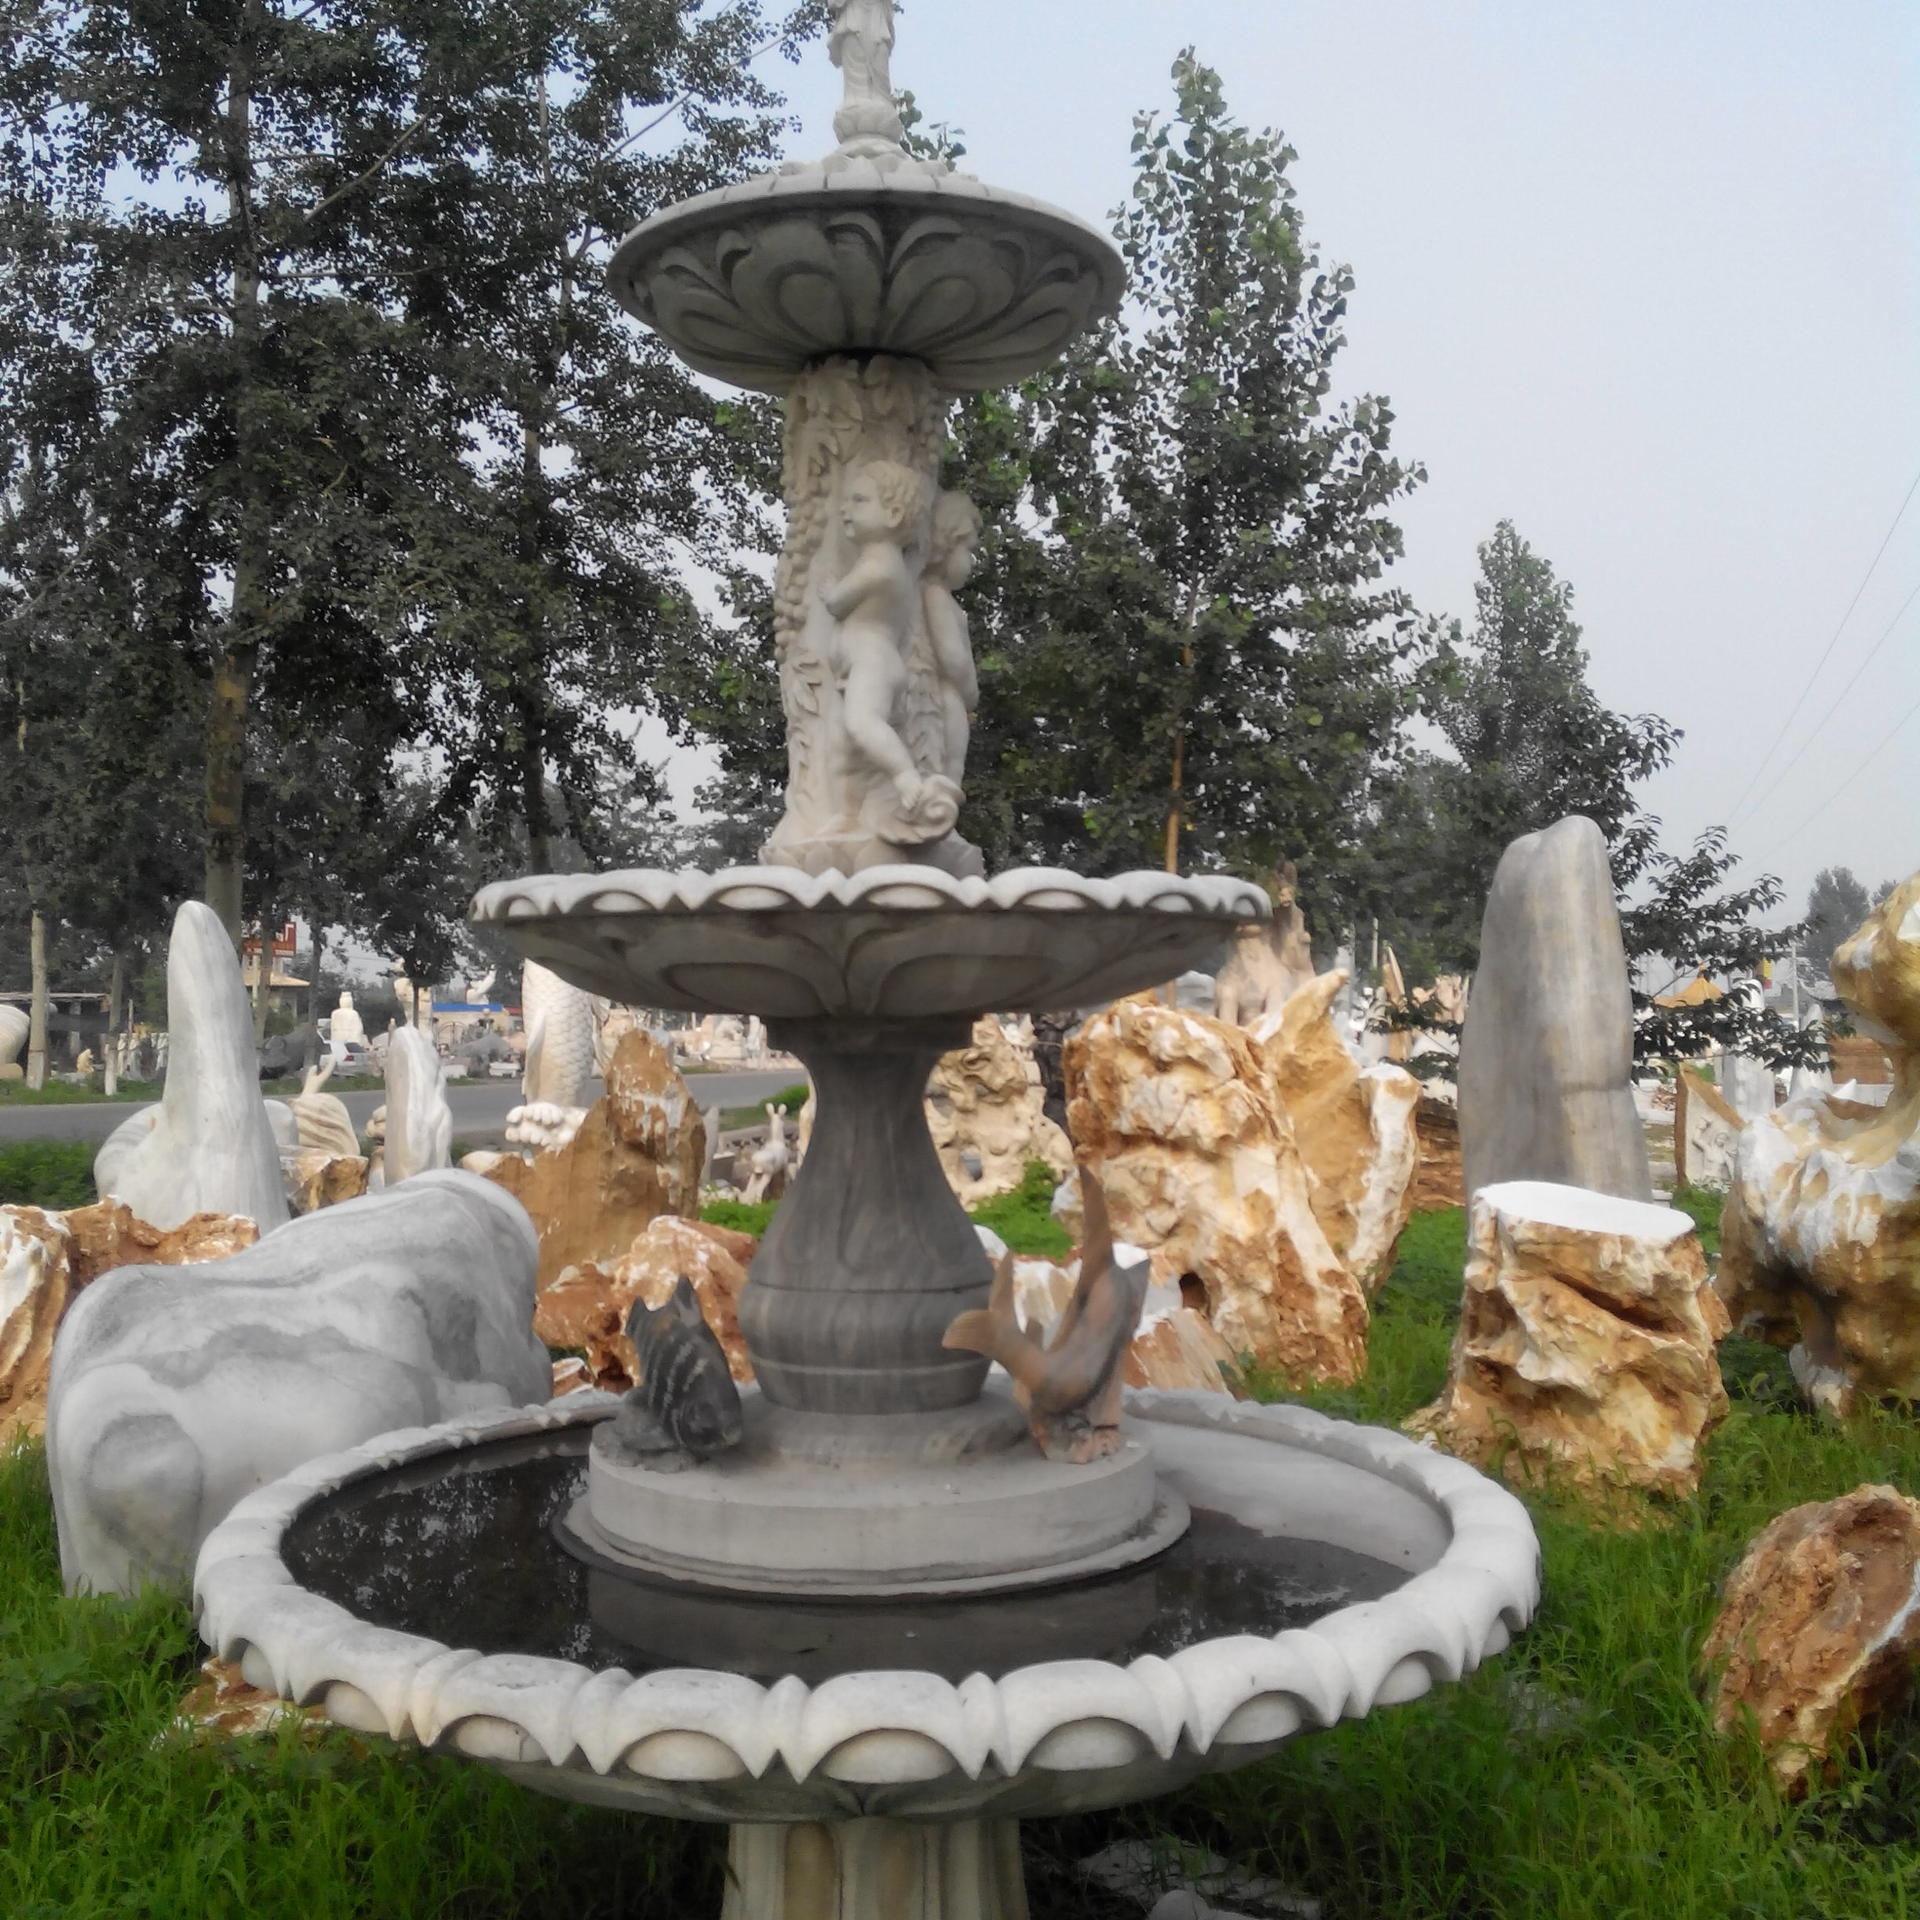 石雕厂家 生产汉白玉石雕喷泉 欧式人物动物流水喷泉 广场庭院室外石雕喷泉定制图片